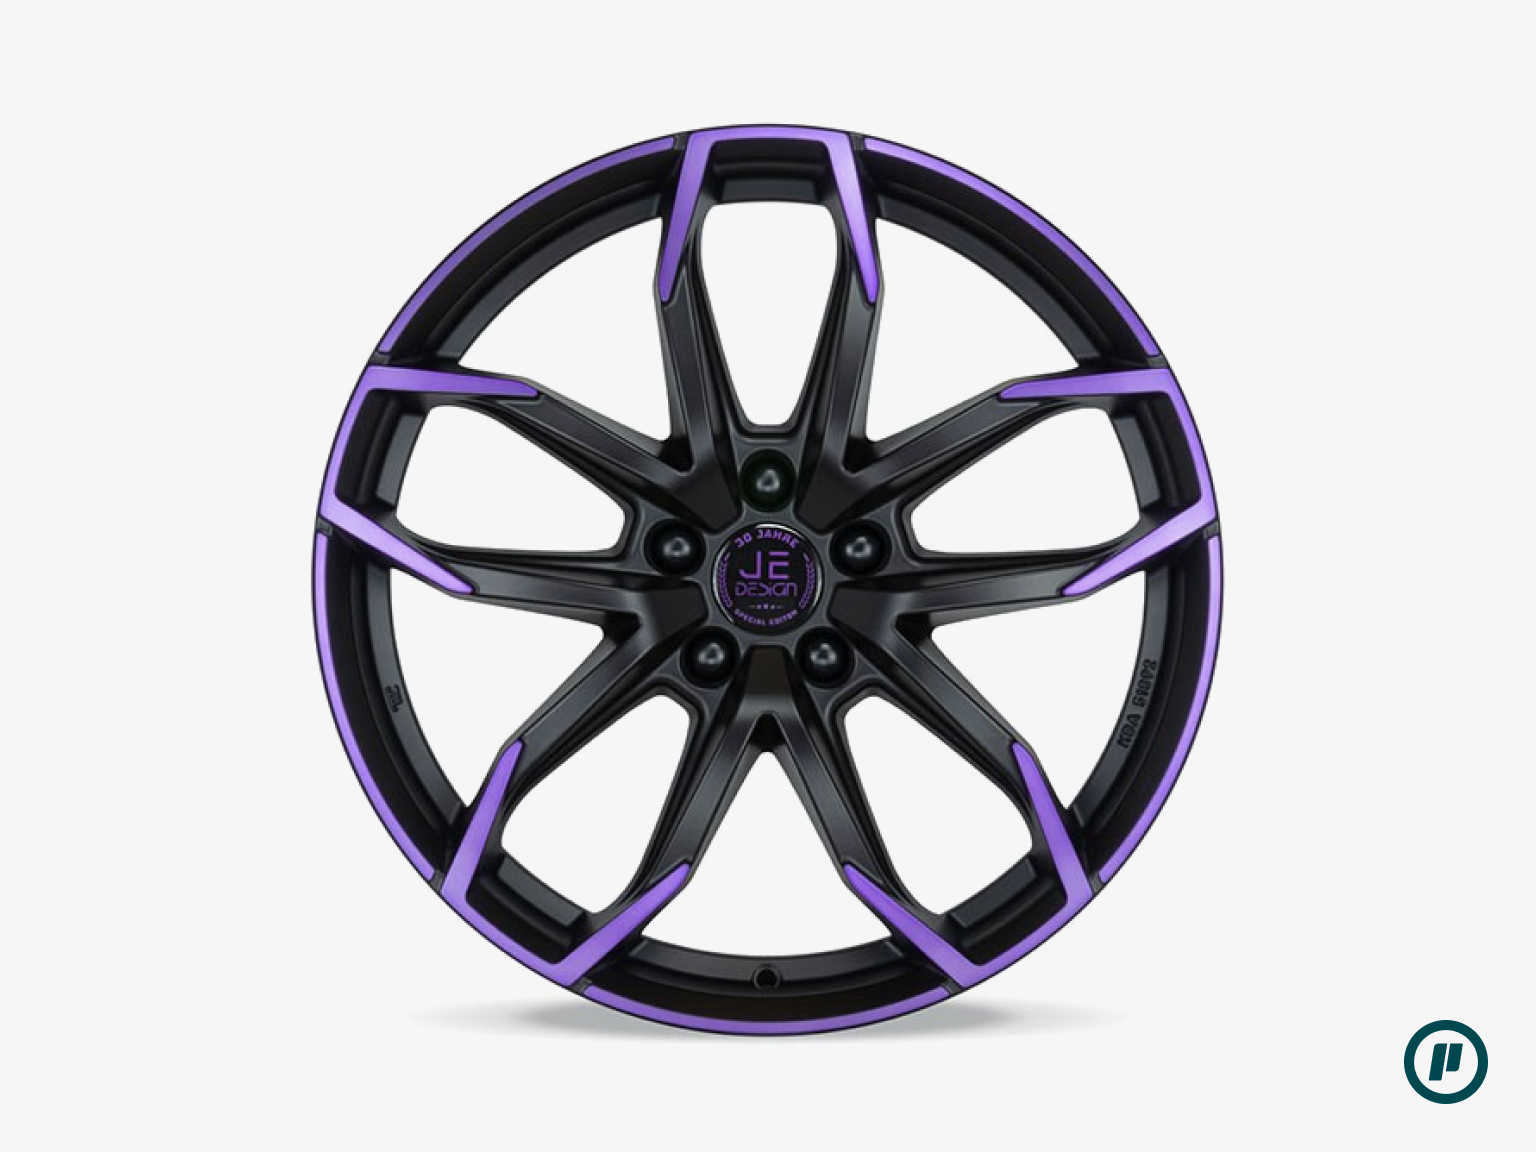 JE Design Wheels - Lucca Purple Edition 20" x 8J | ET 40 | 5x112 [3 Colors]